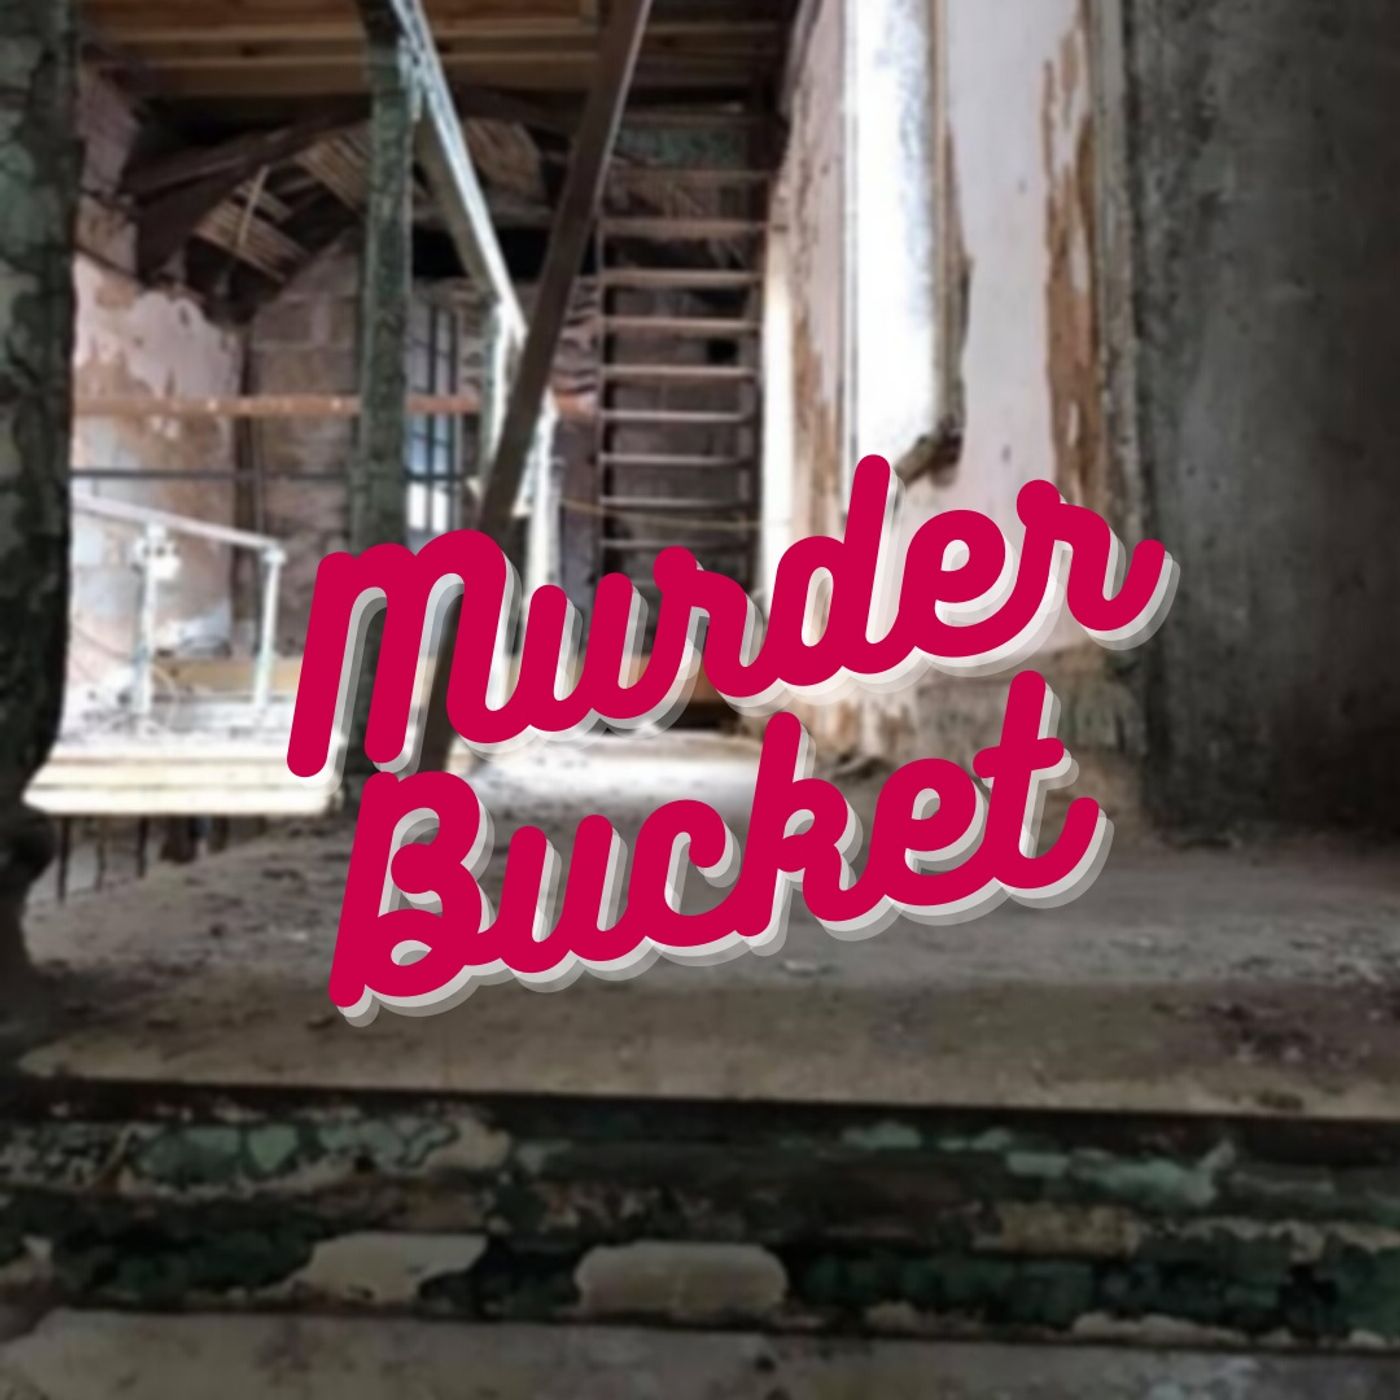 Isabella Stewart Gardner Museum Heist by Murder Bucket